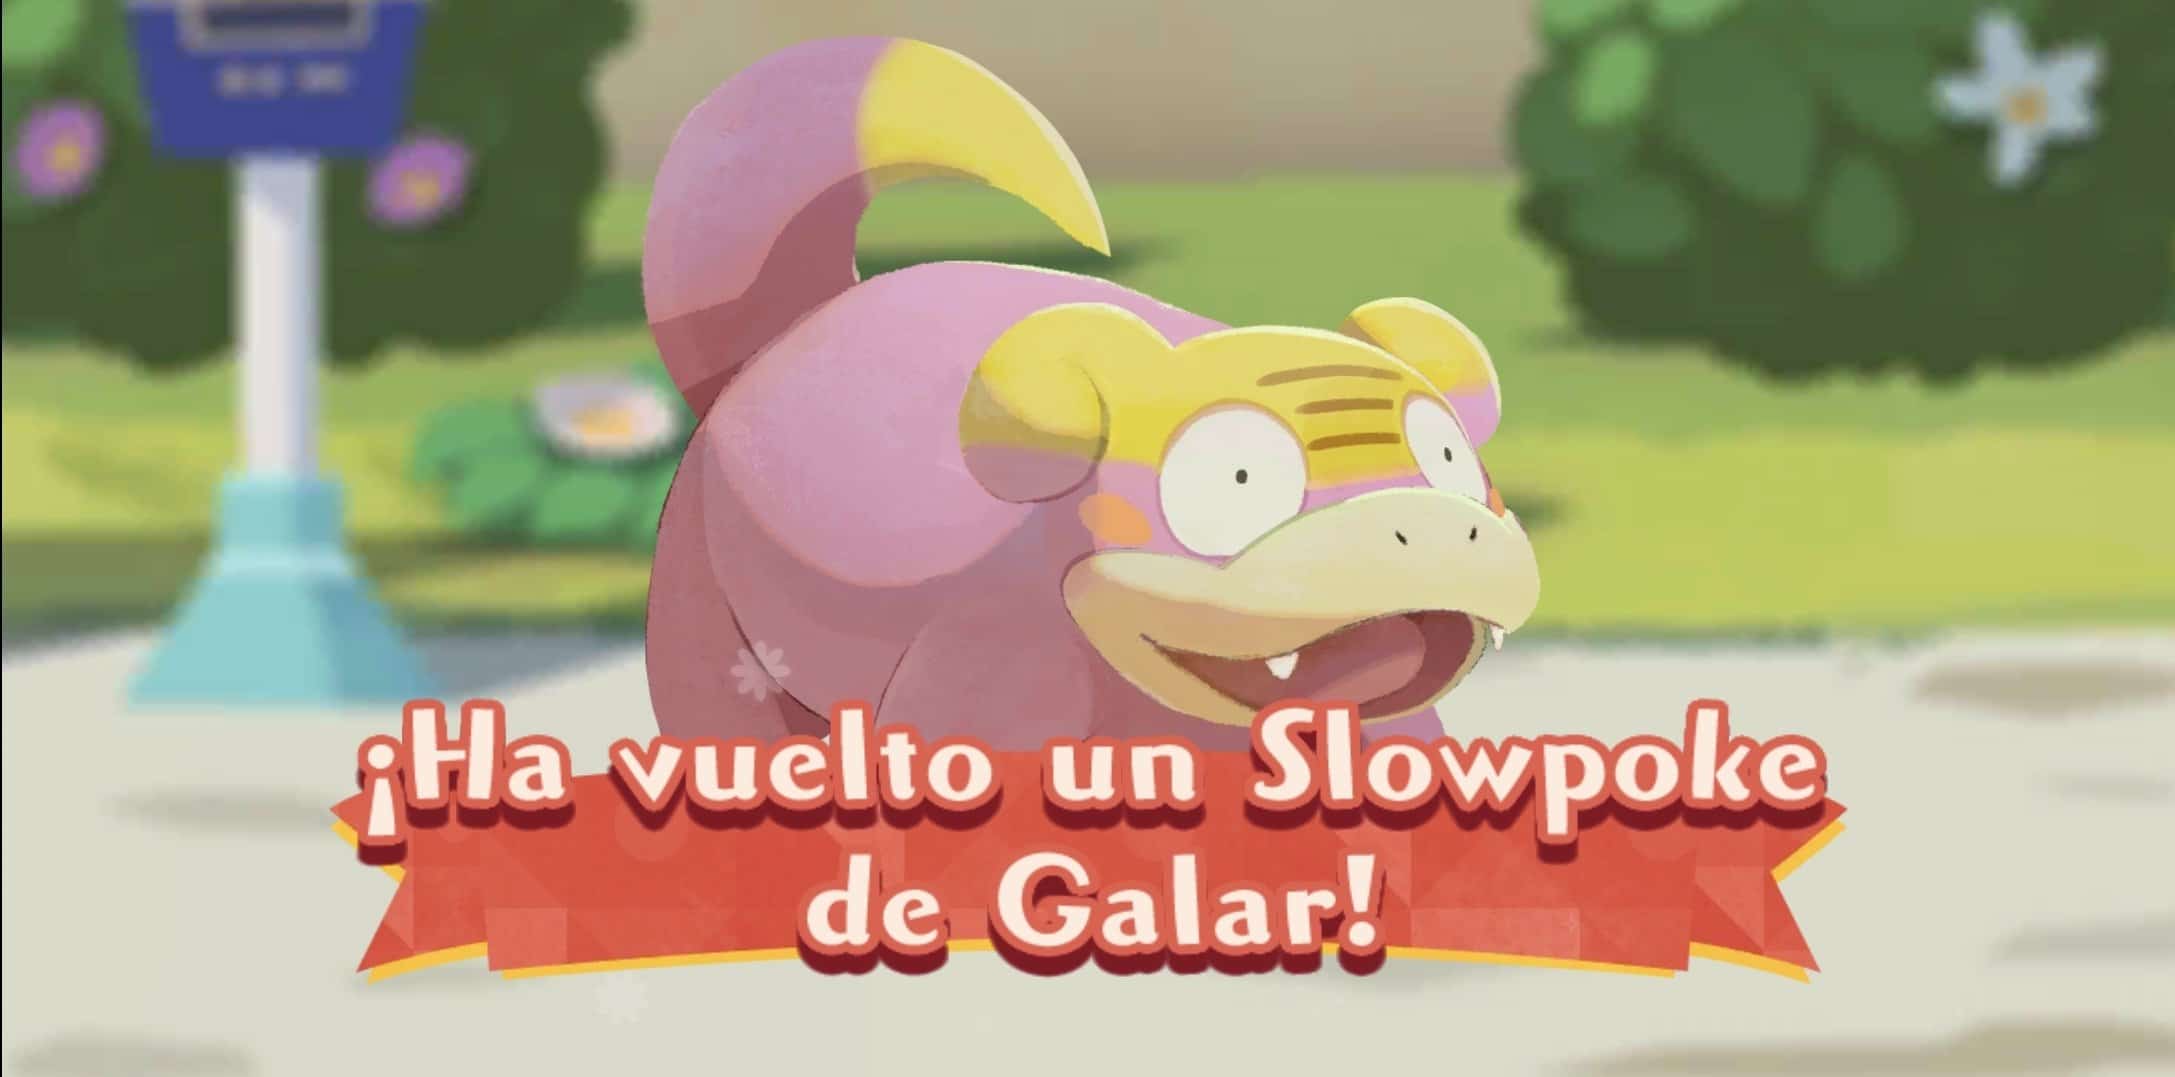 Pokémon Café Mix celebra la llegada de nuevas comandas y el regreso de Slowpoke de Galar